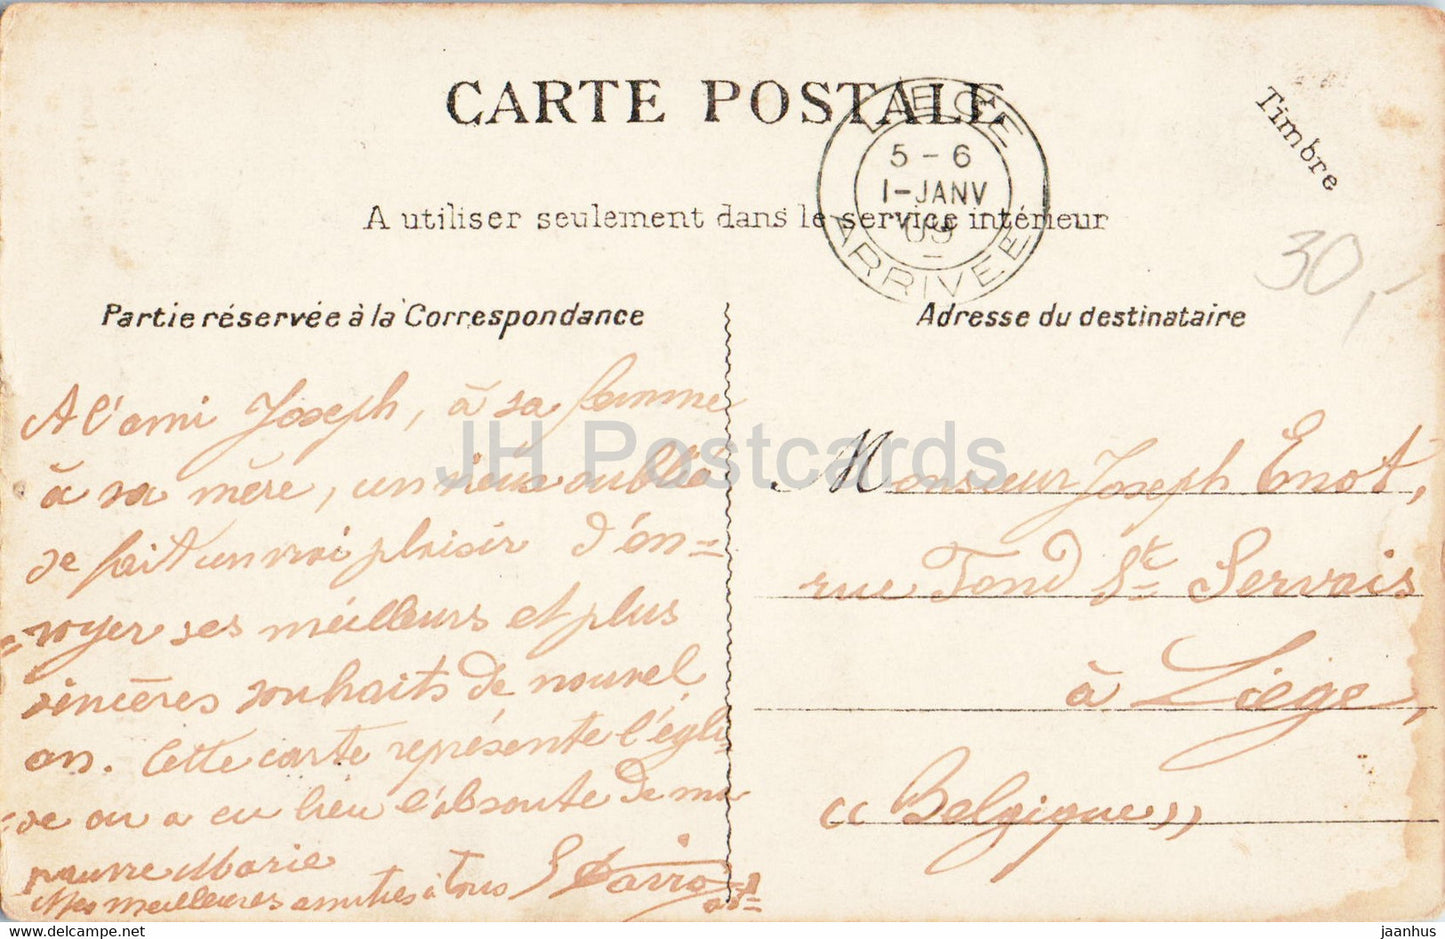 Montmartre - Eglise Saint Jean l'Evangeliste - Kirche - 661 - alte Postkarte - 1909 - Frankreich - gebraucht